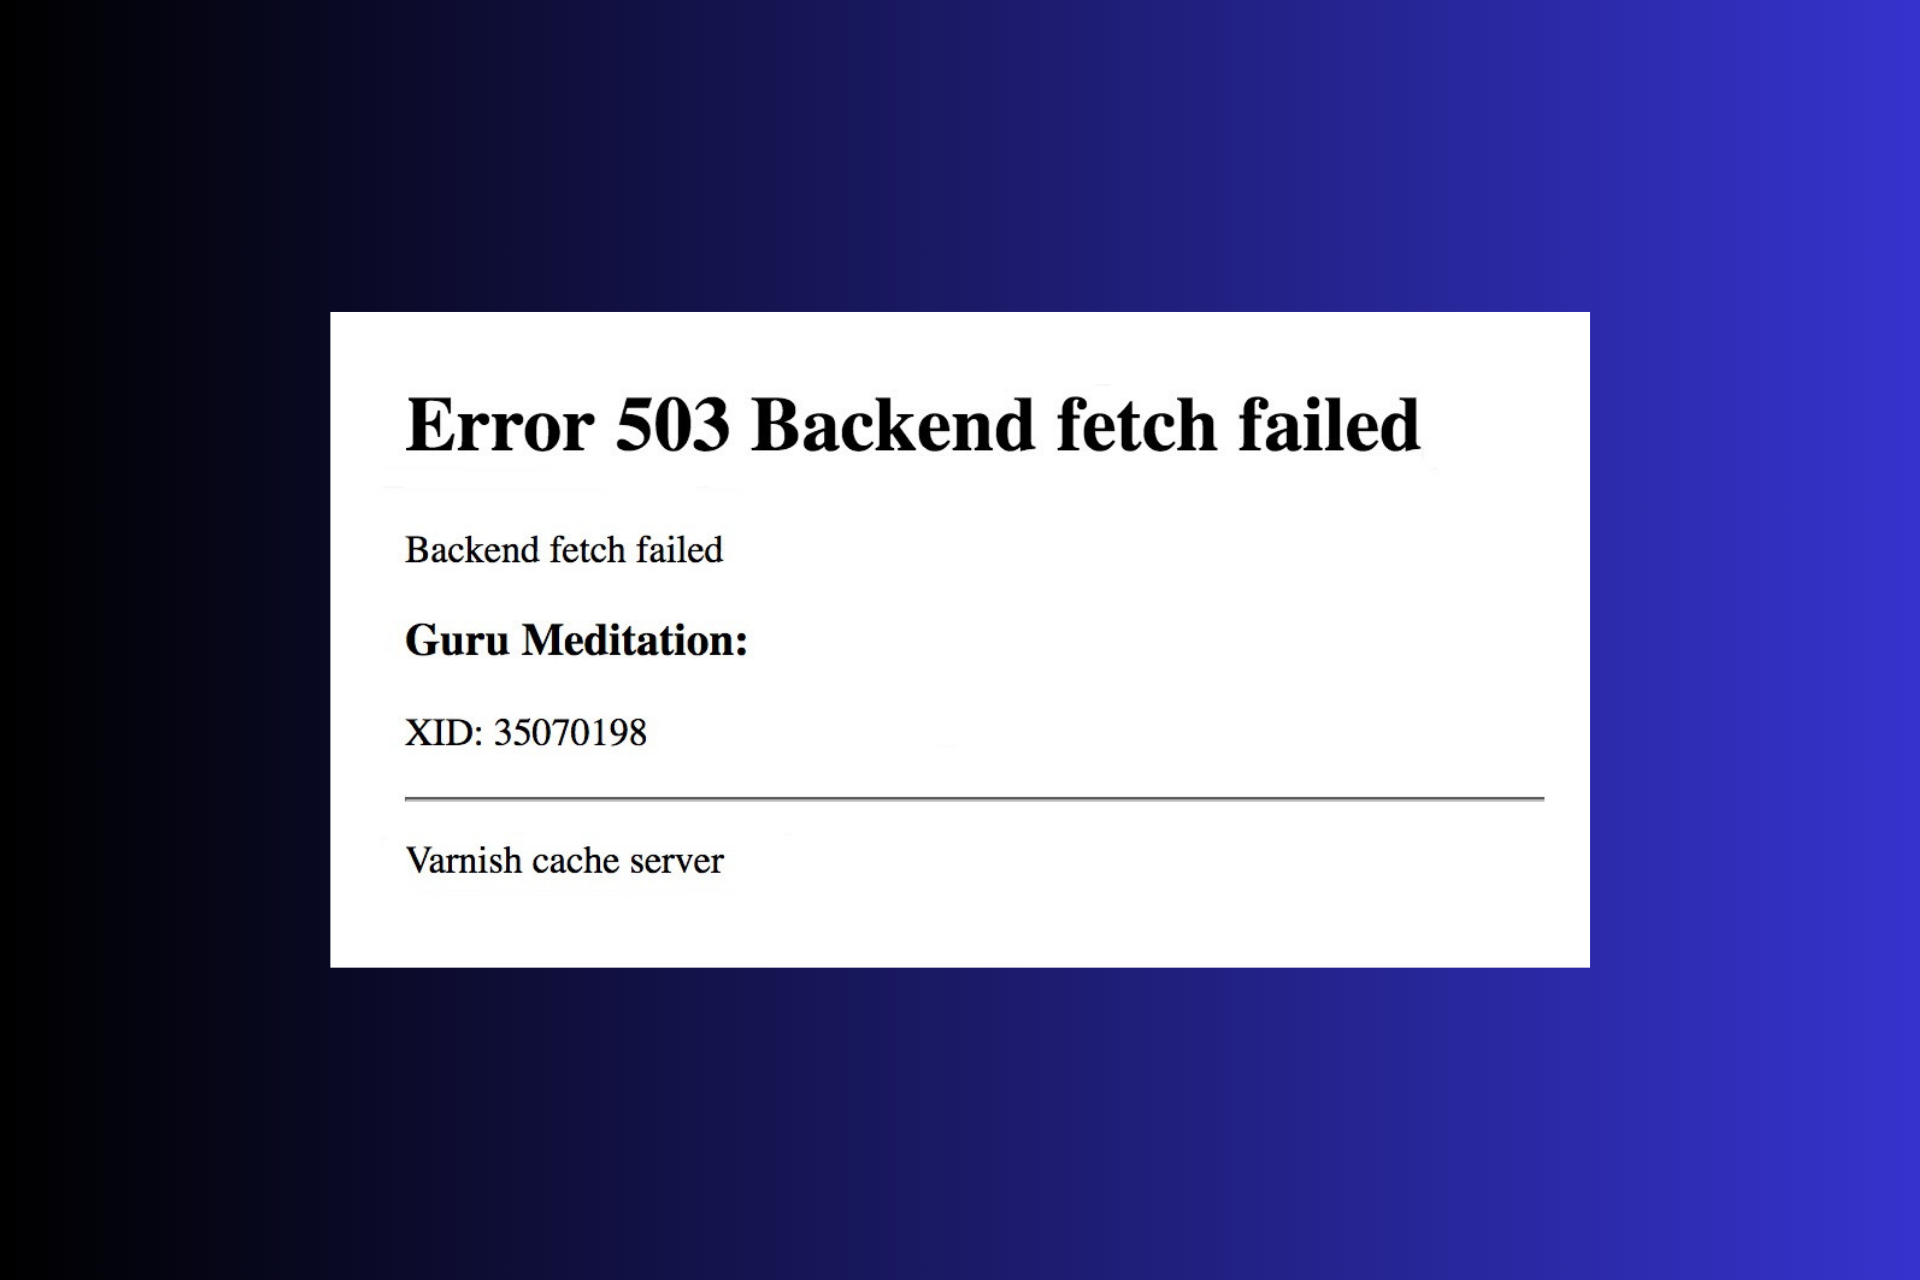 Error 503 Backend Fetch Failed